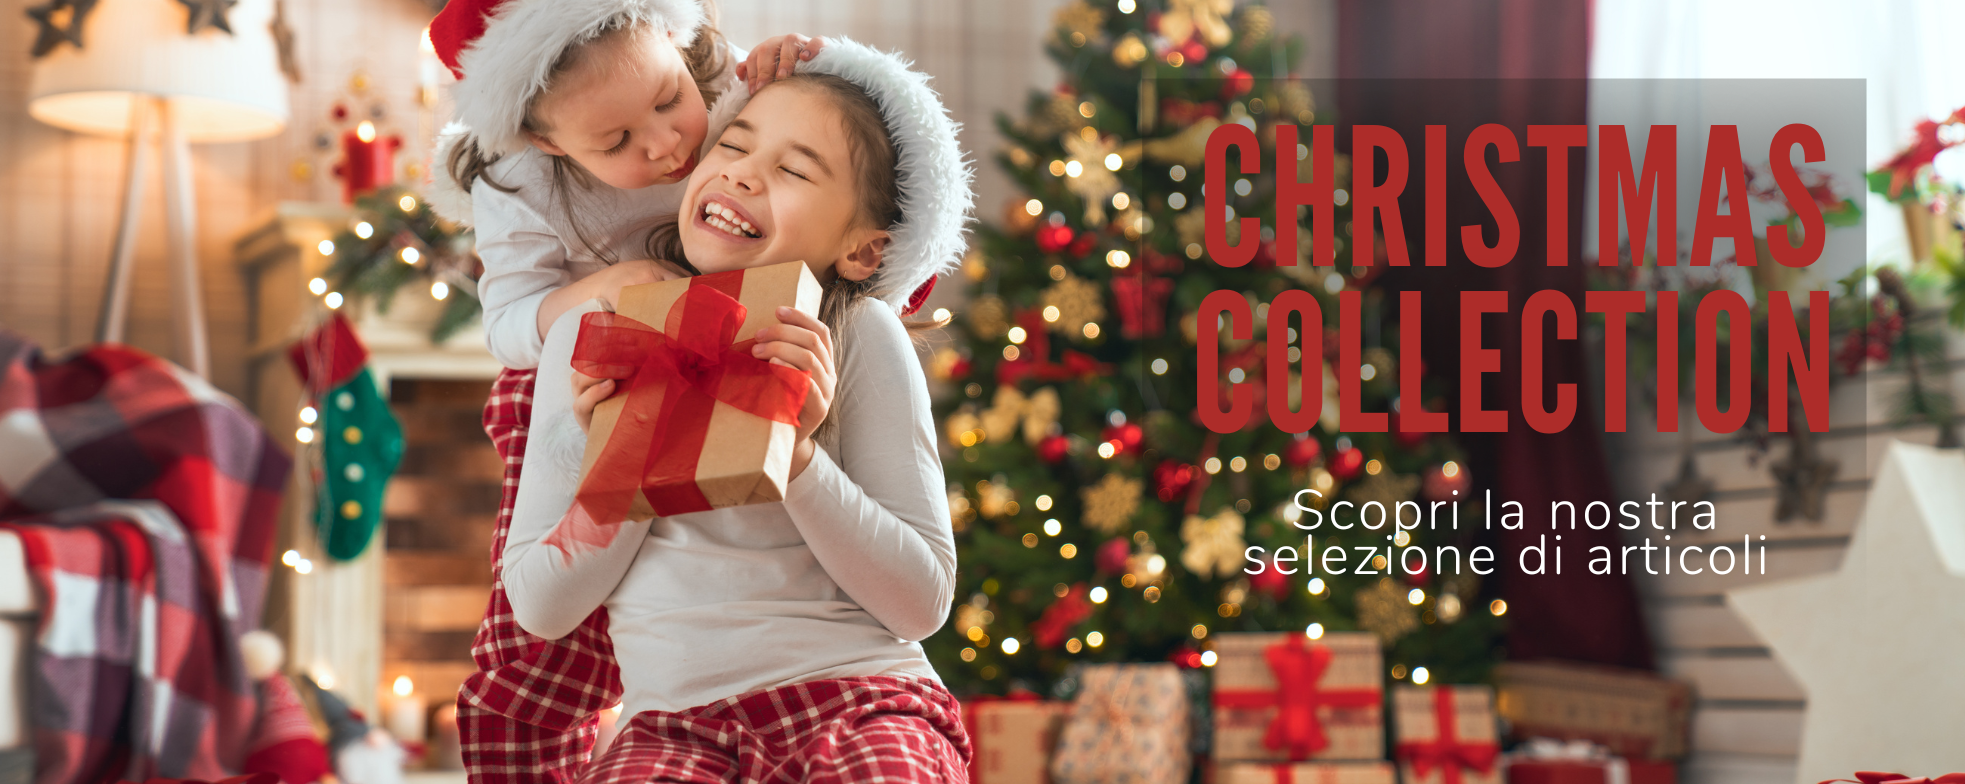 CHRISTMAS COLLECTION - scopri la nostra selezione di articoli per la stagione natalizia